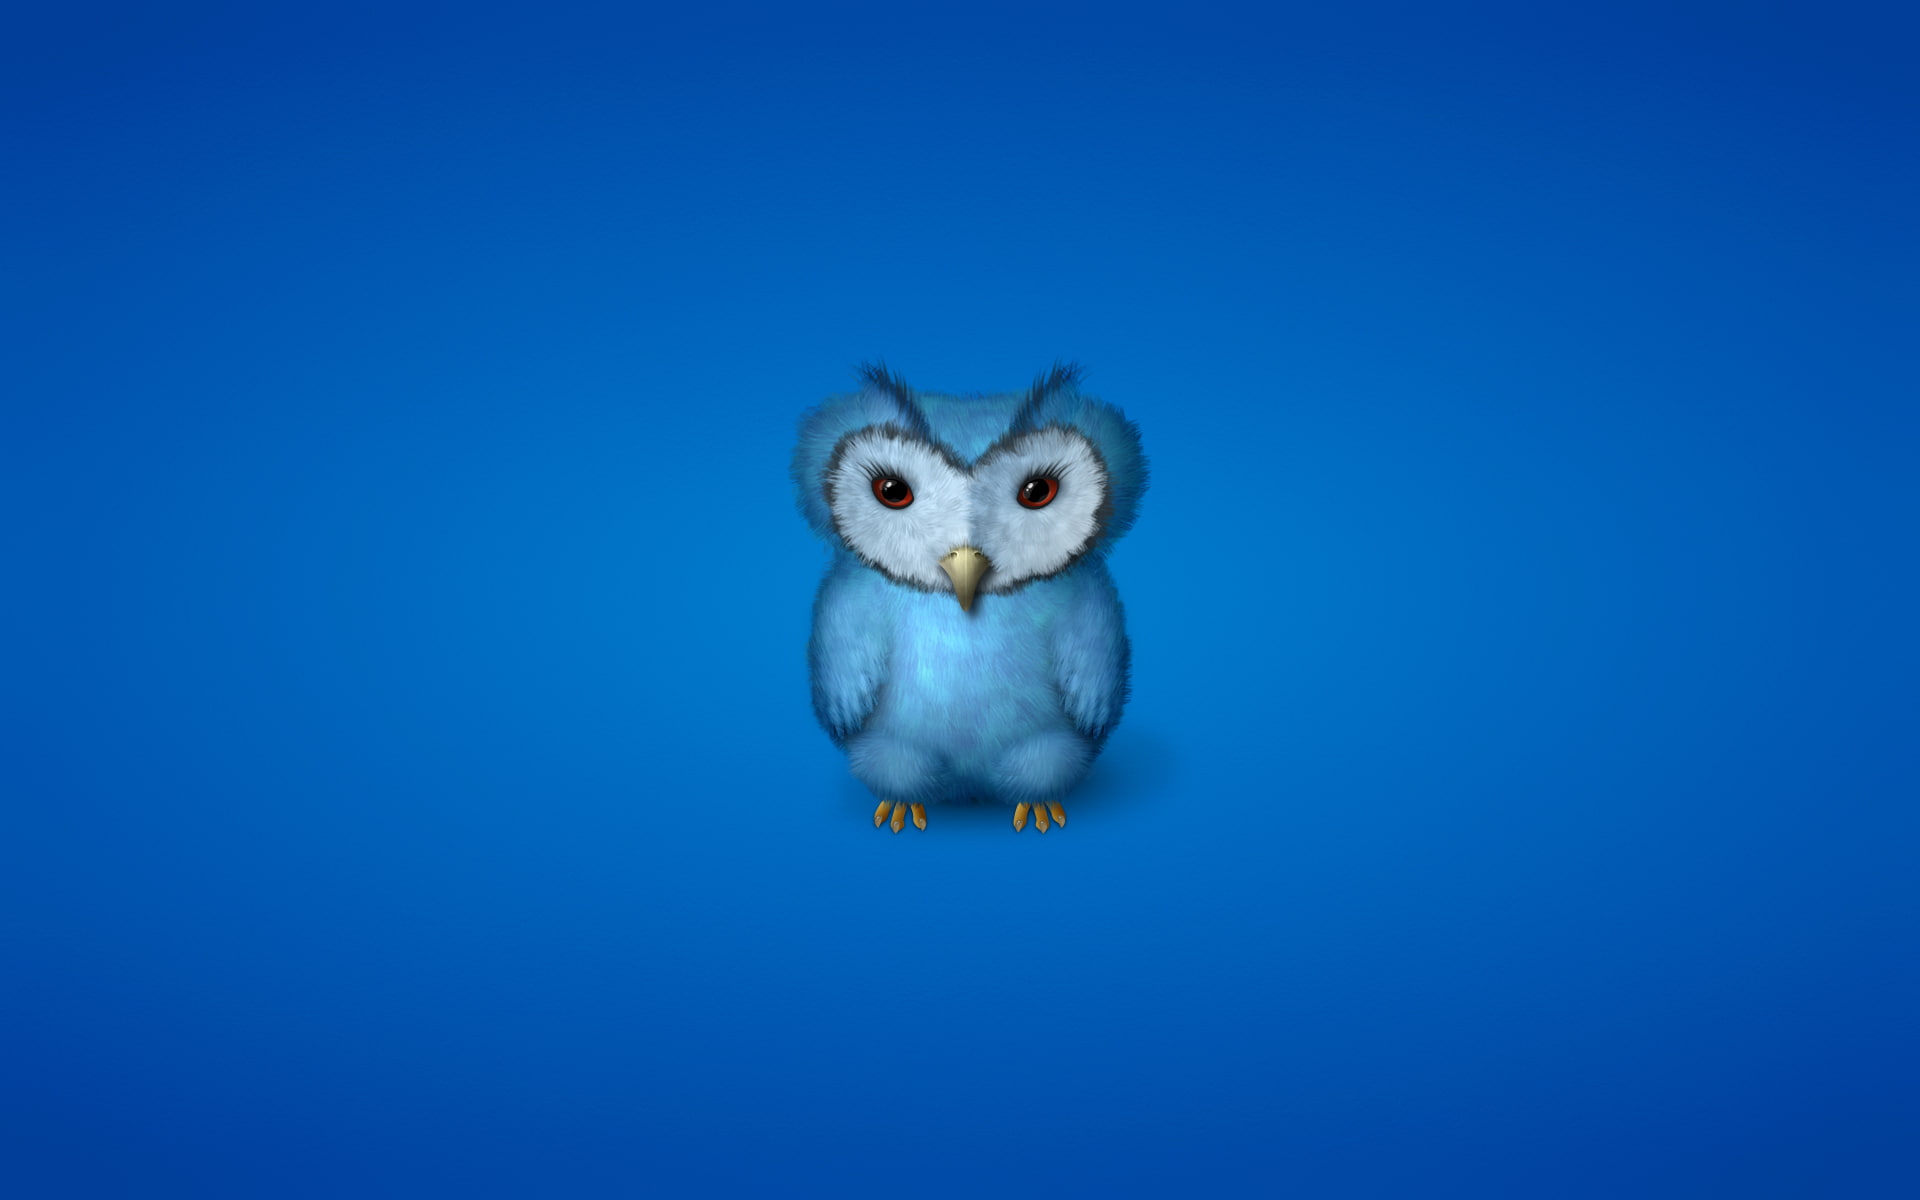 blue owl clip art, bird, minimalism, bluish background, one animal